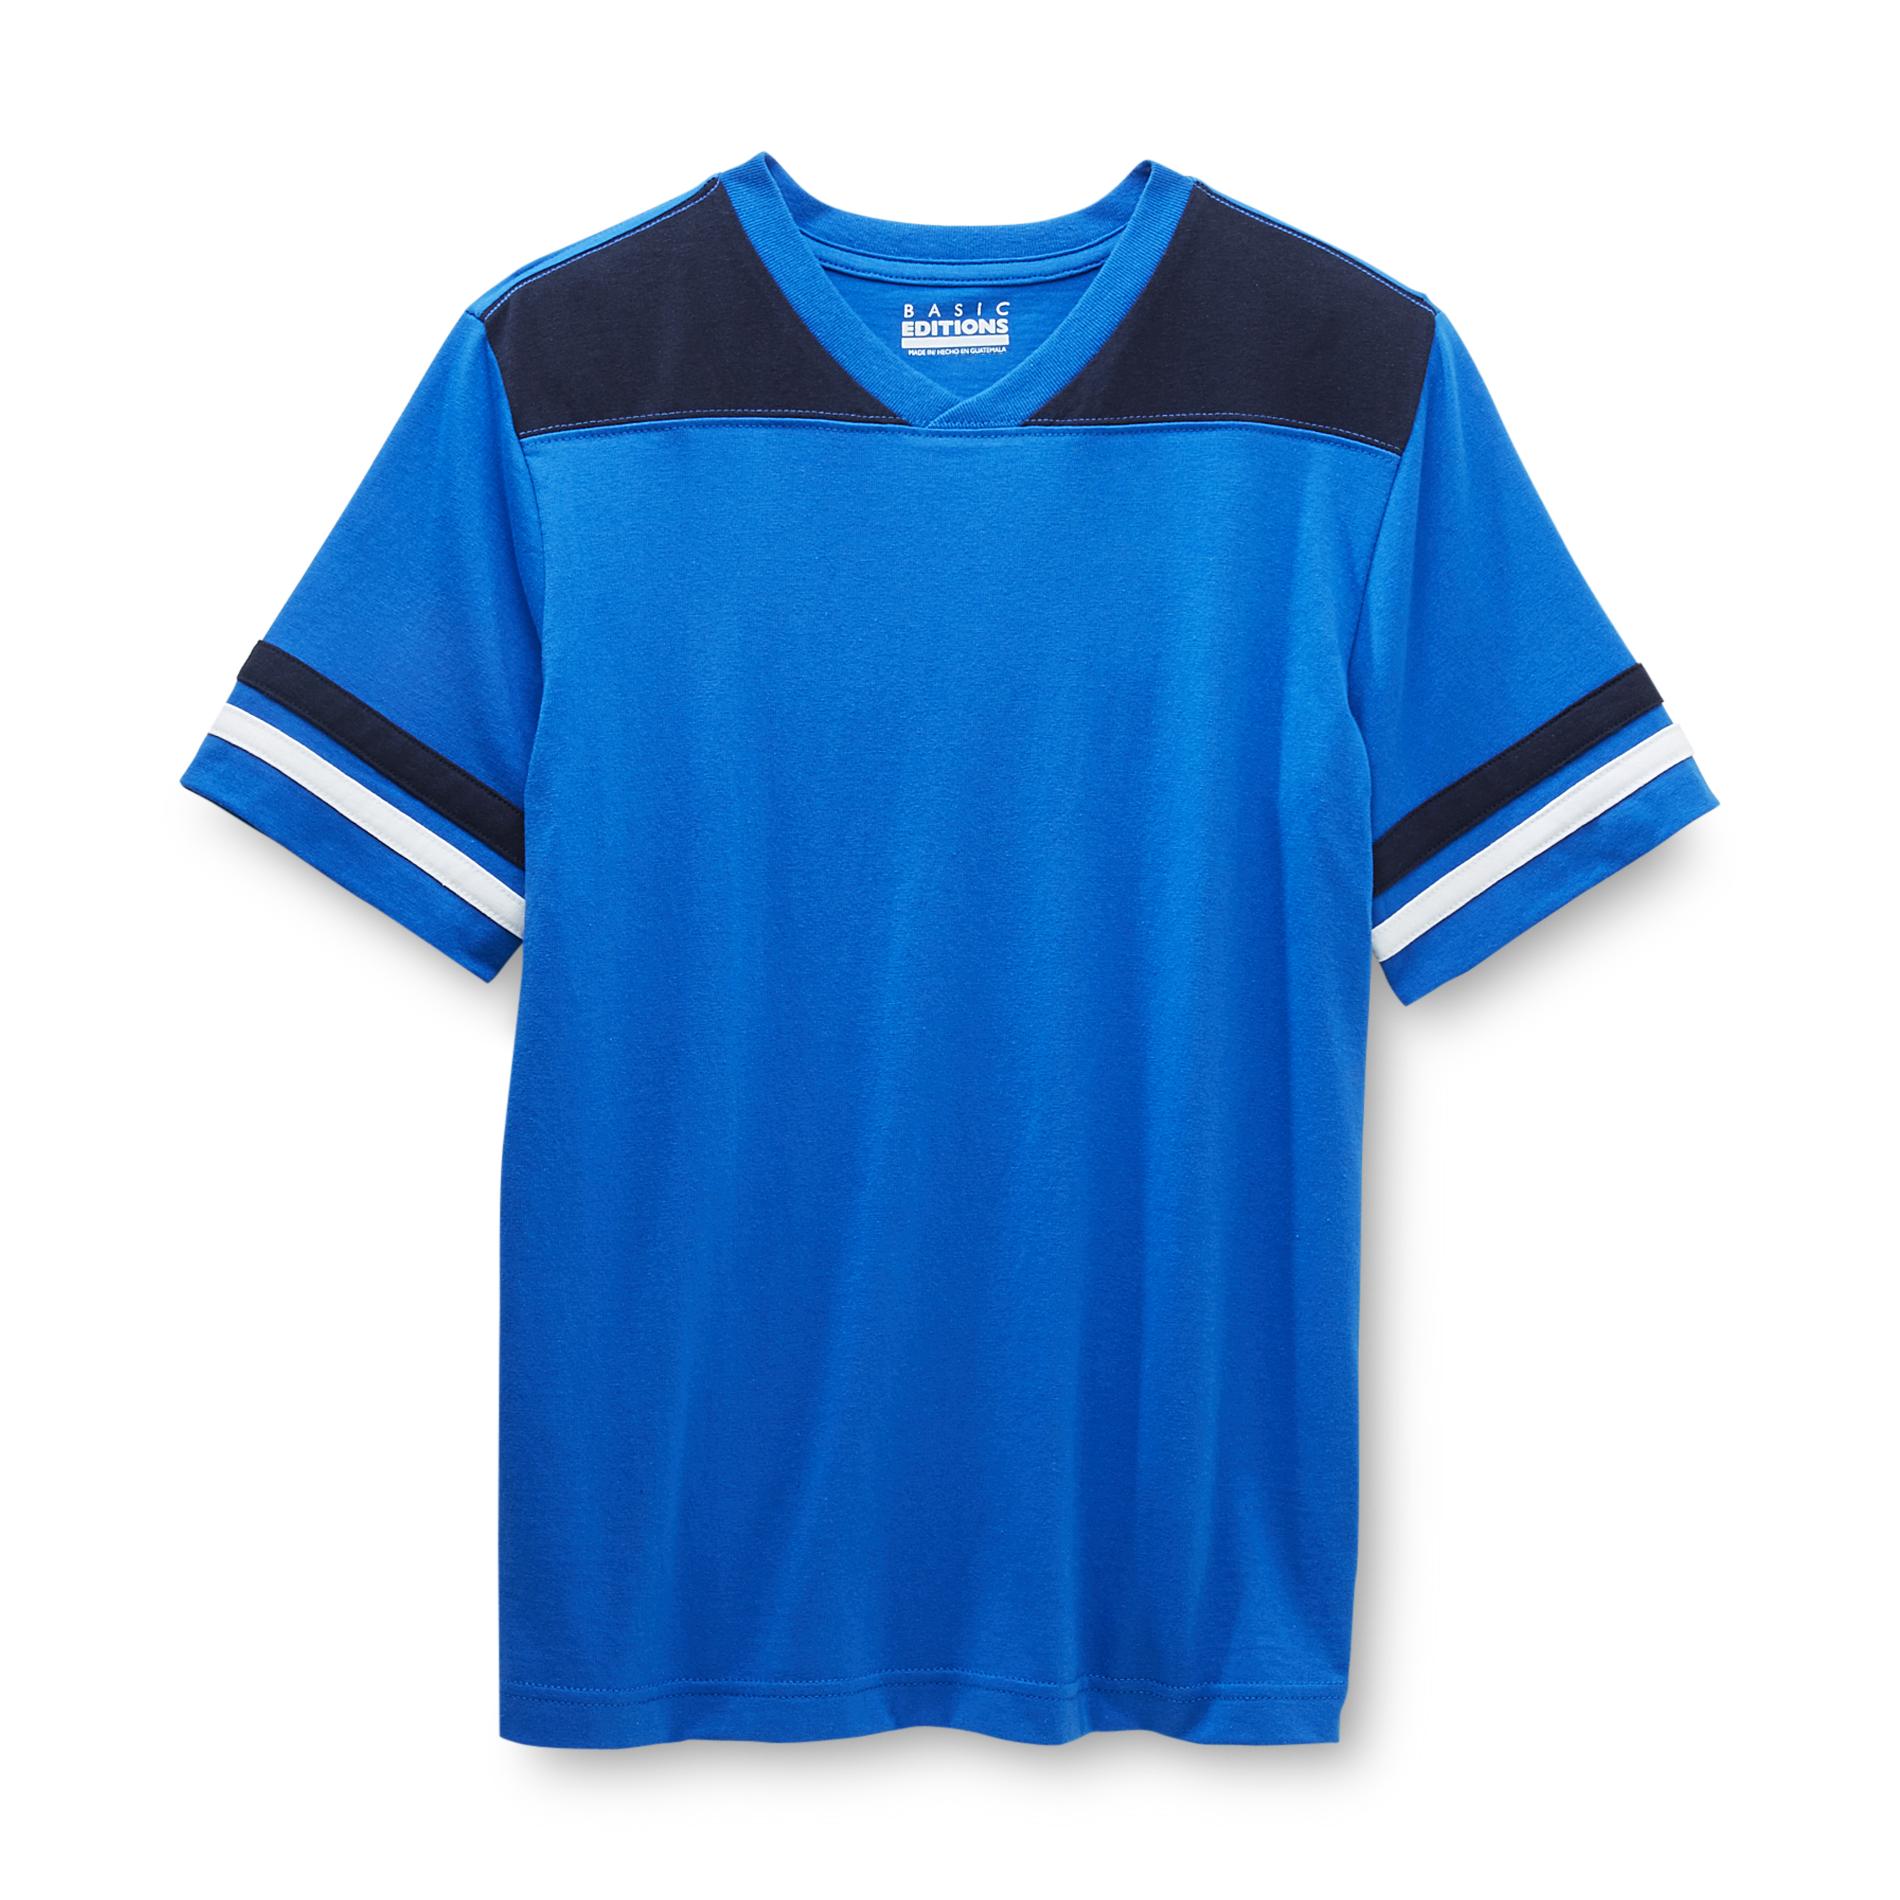 Basic Editions Boy's V-Neck T-Shirt - Striped